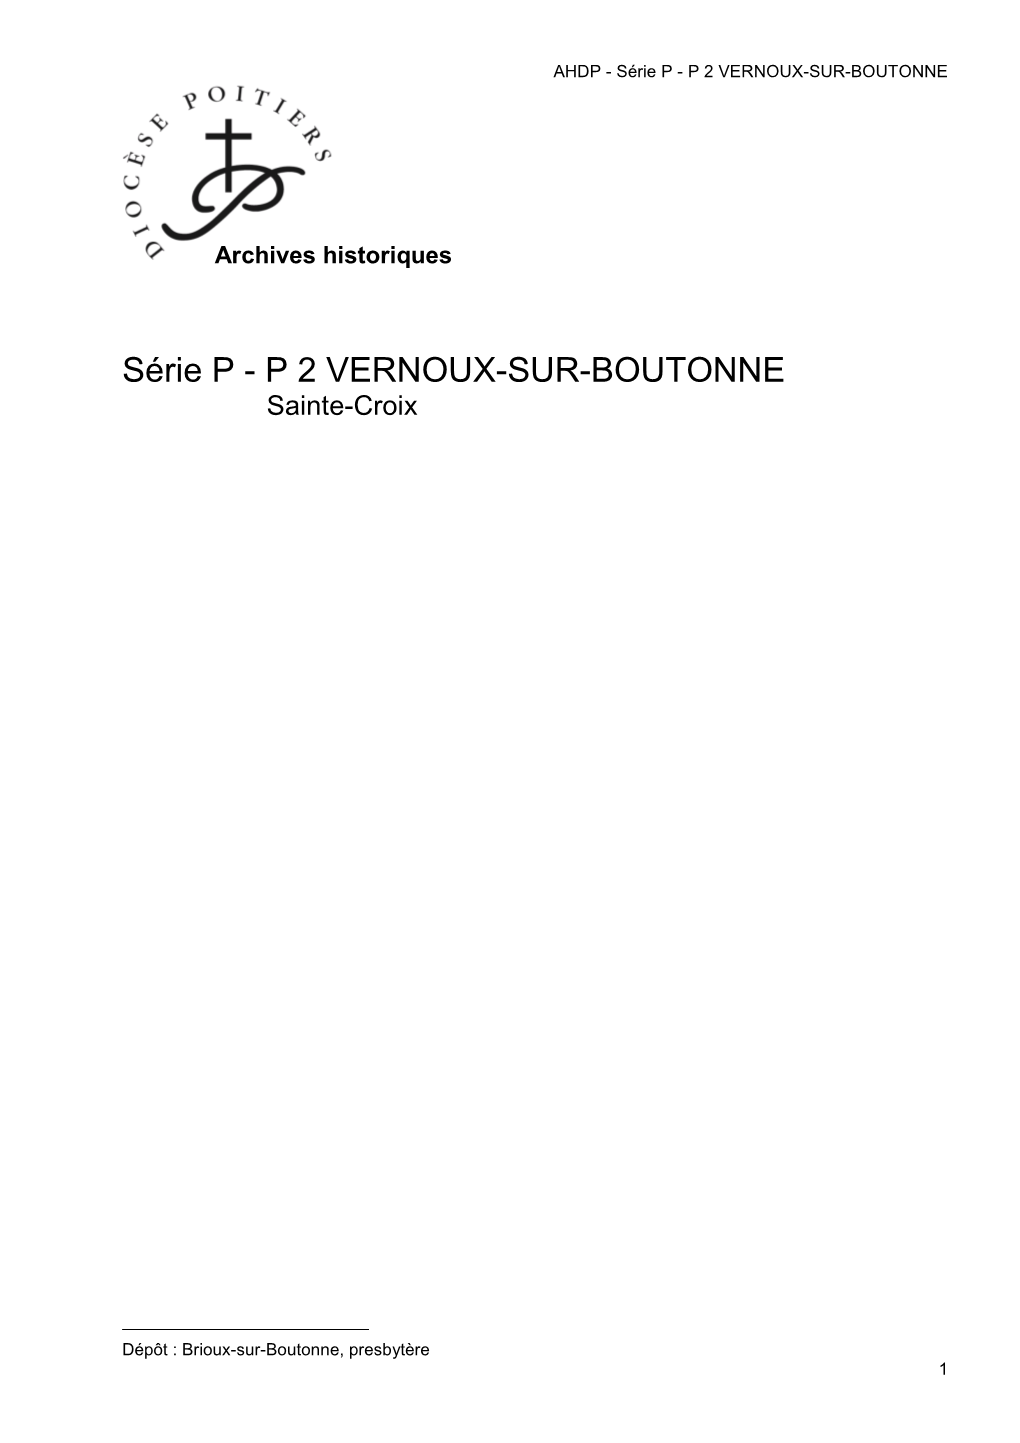 P 2 Vernoux-Sur-Boutonne